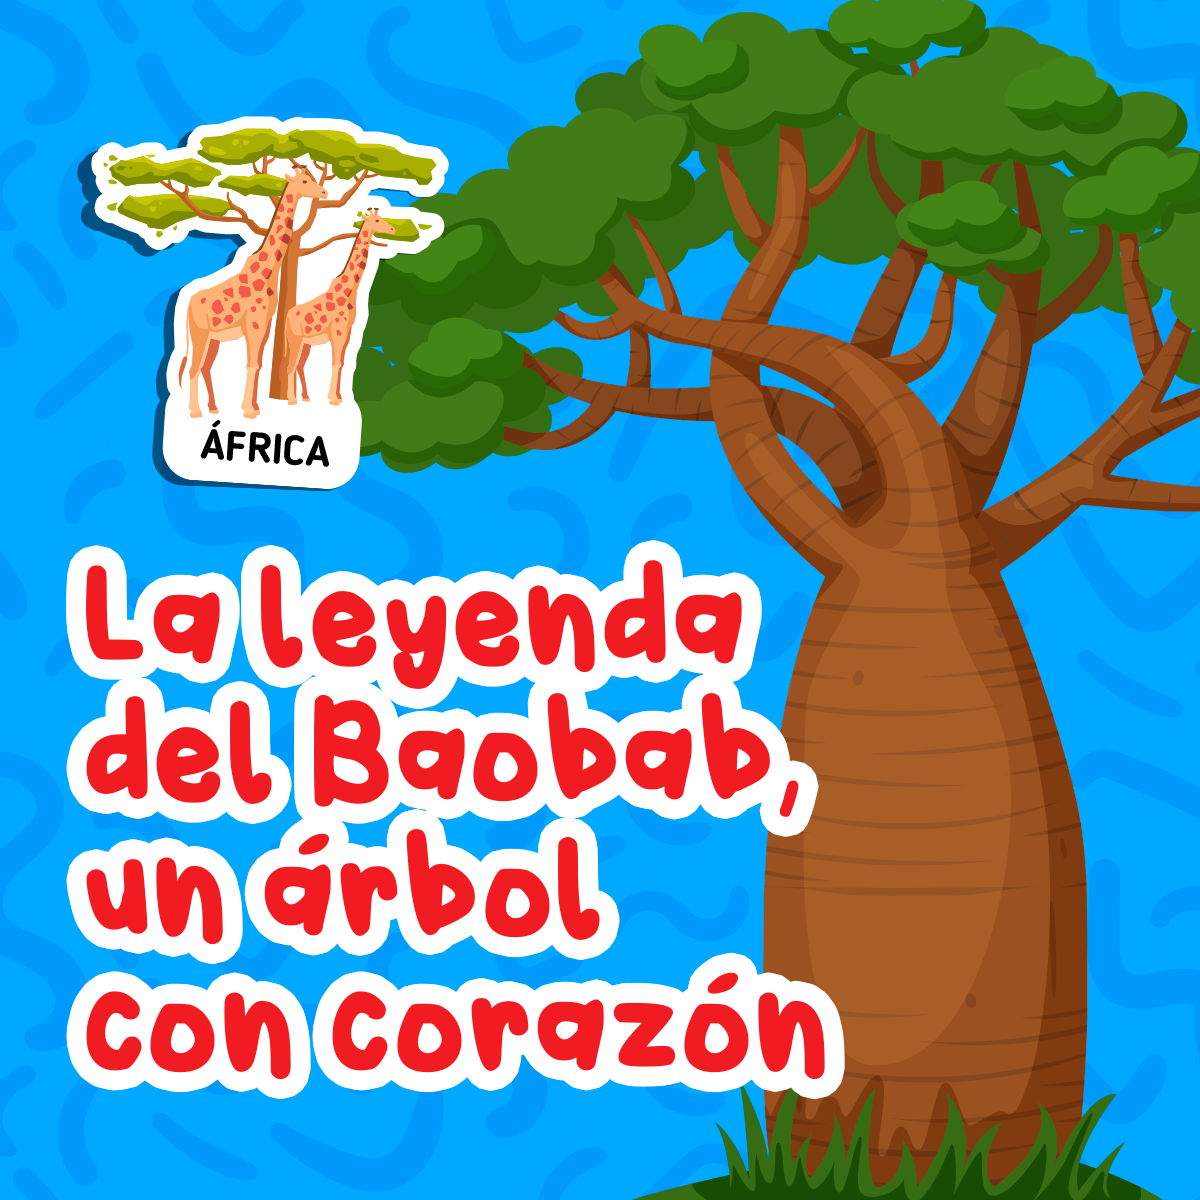 La Leyenda de Baobab, un árbol con corazón